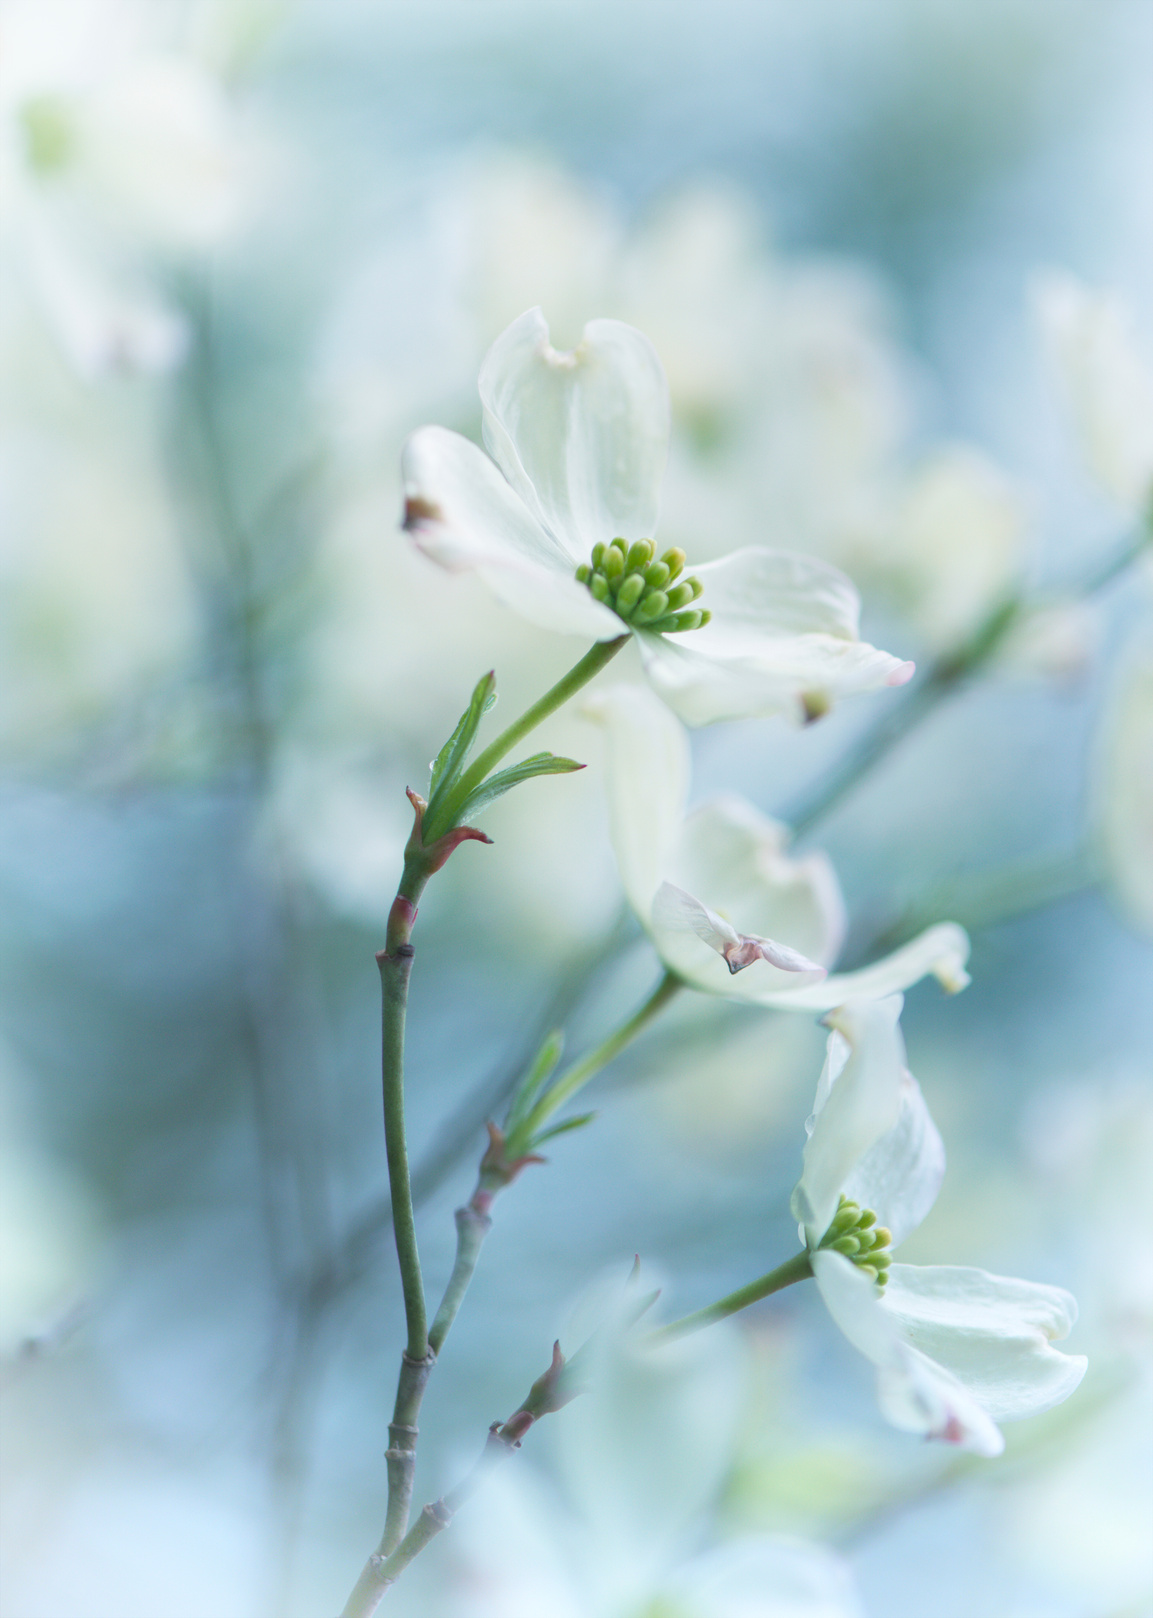 Vertical white flowering dogwood flower blossom